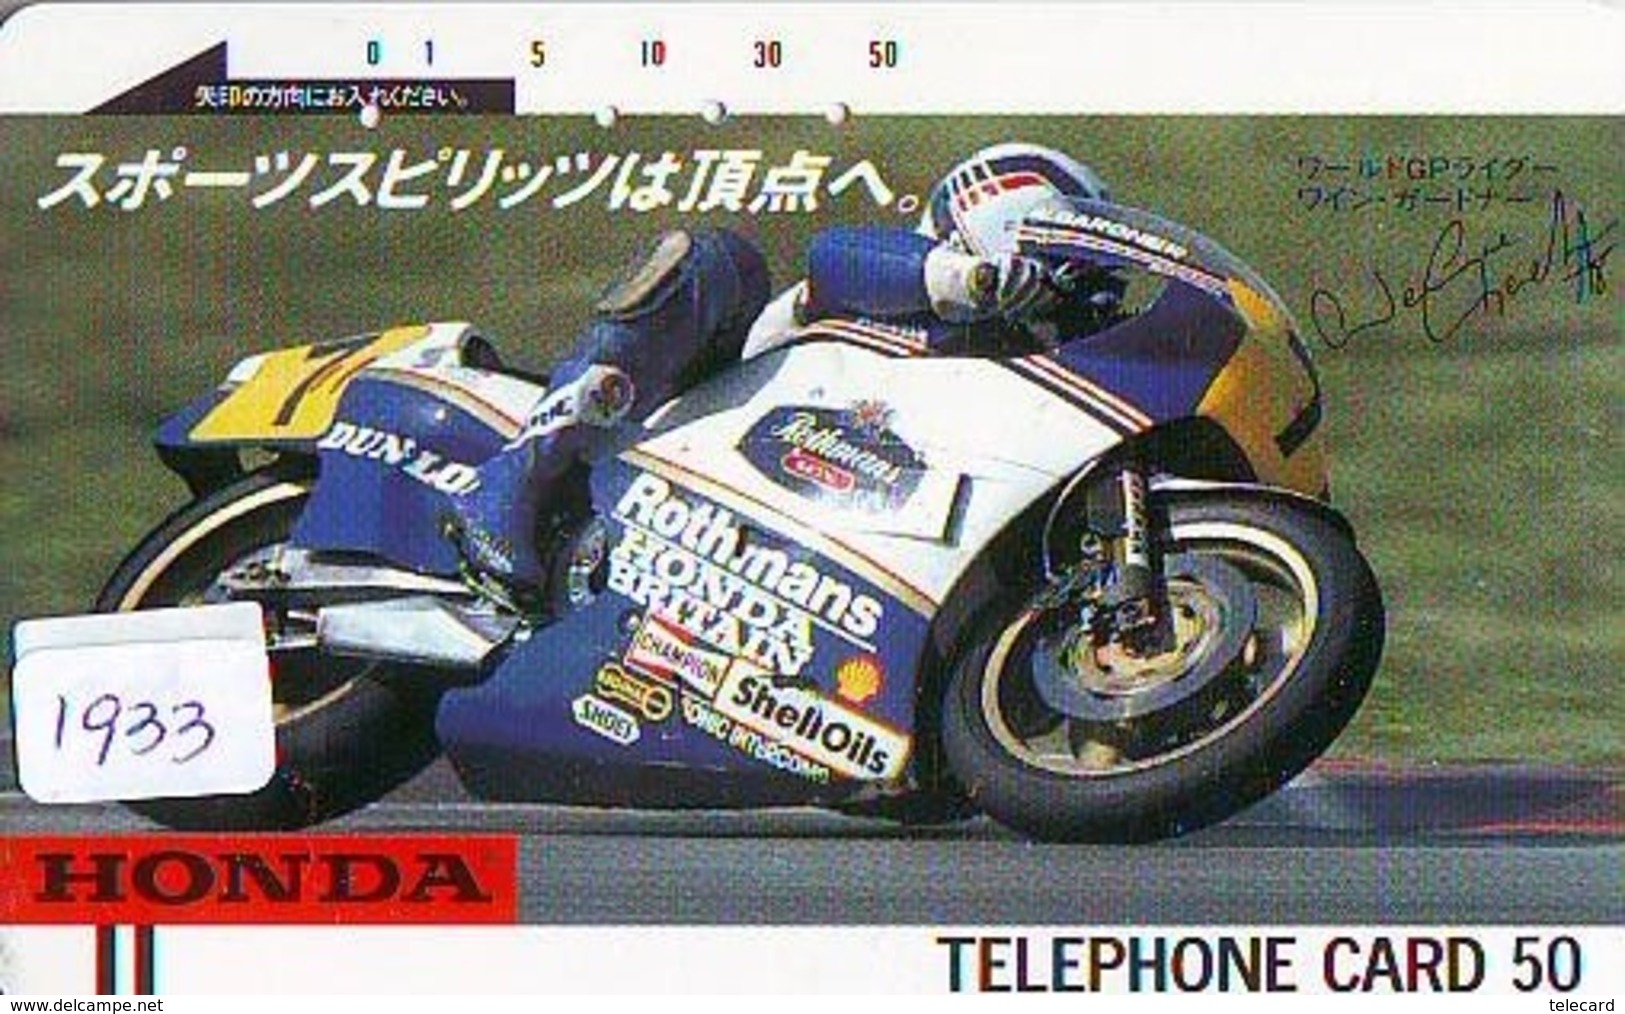 Télécarte Japon * FRONT BAR * 110-6033  * HONDA * MOTO  (1933) MOTORBIKE * PHONECARD JAPAN - Motos